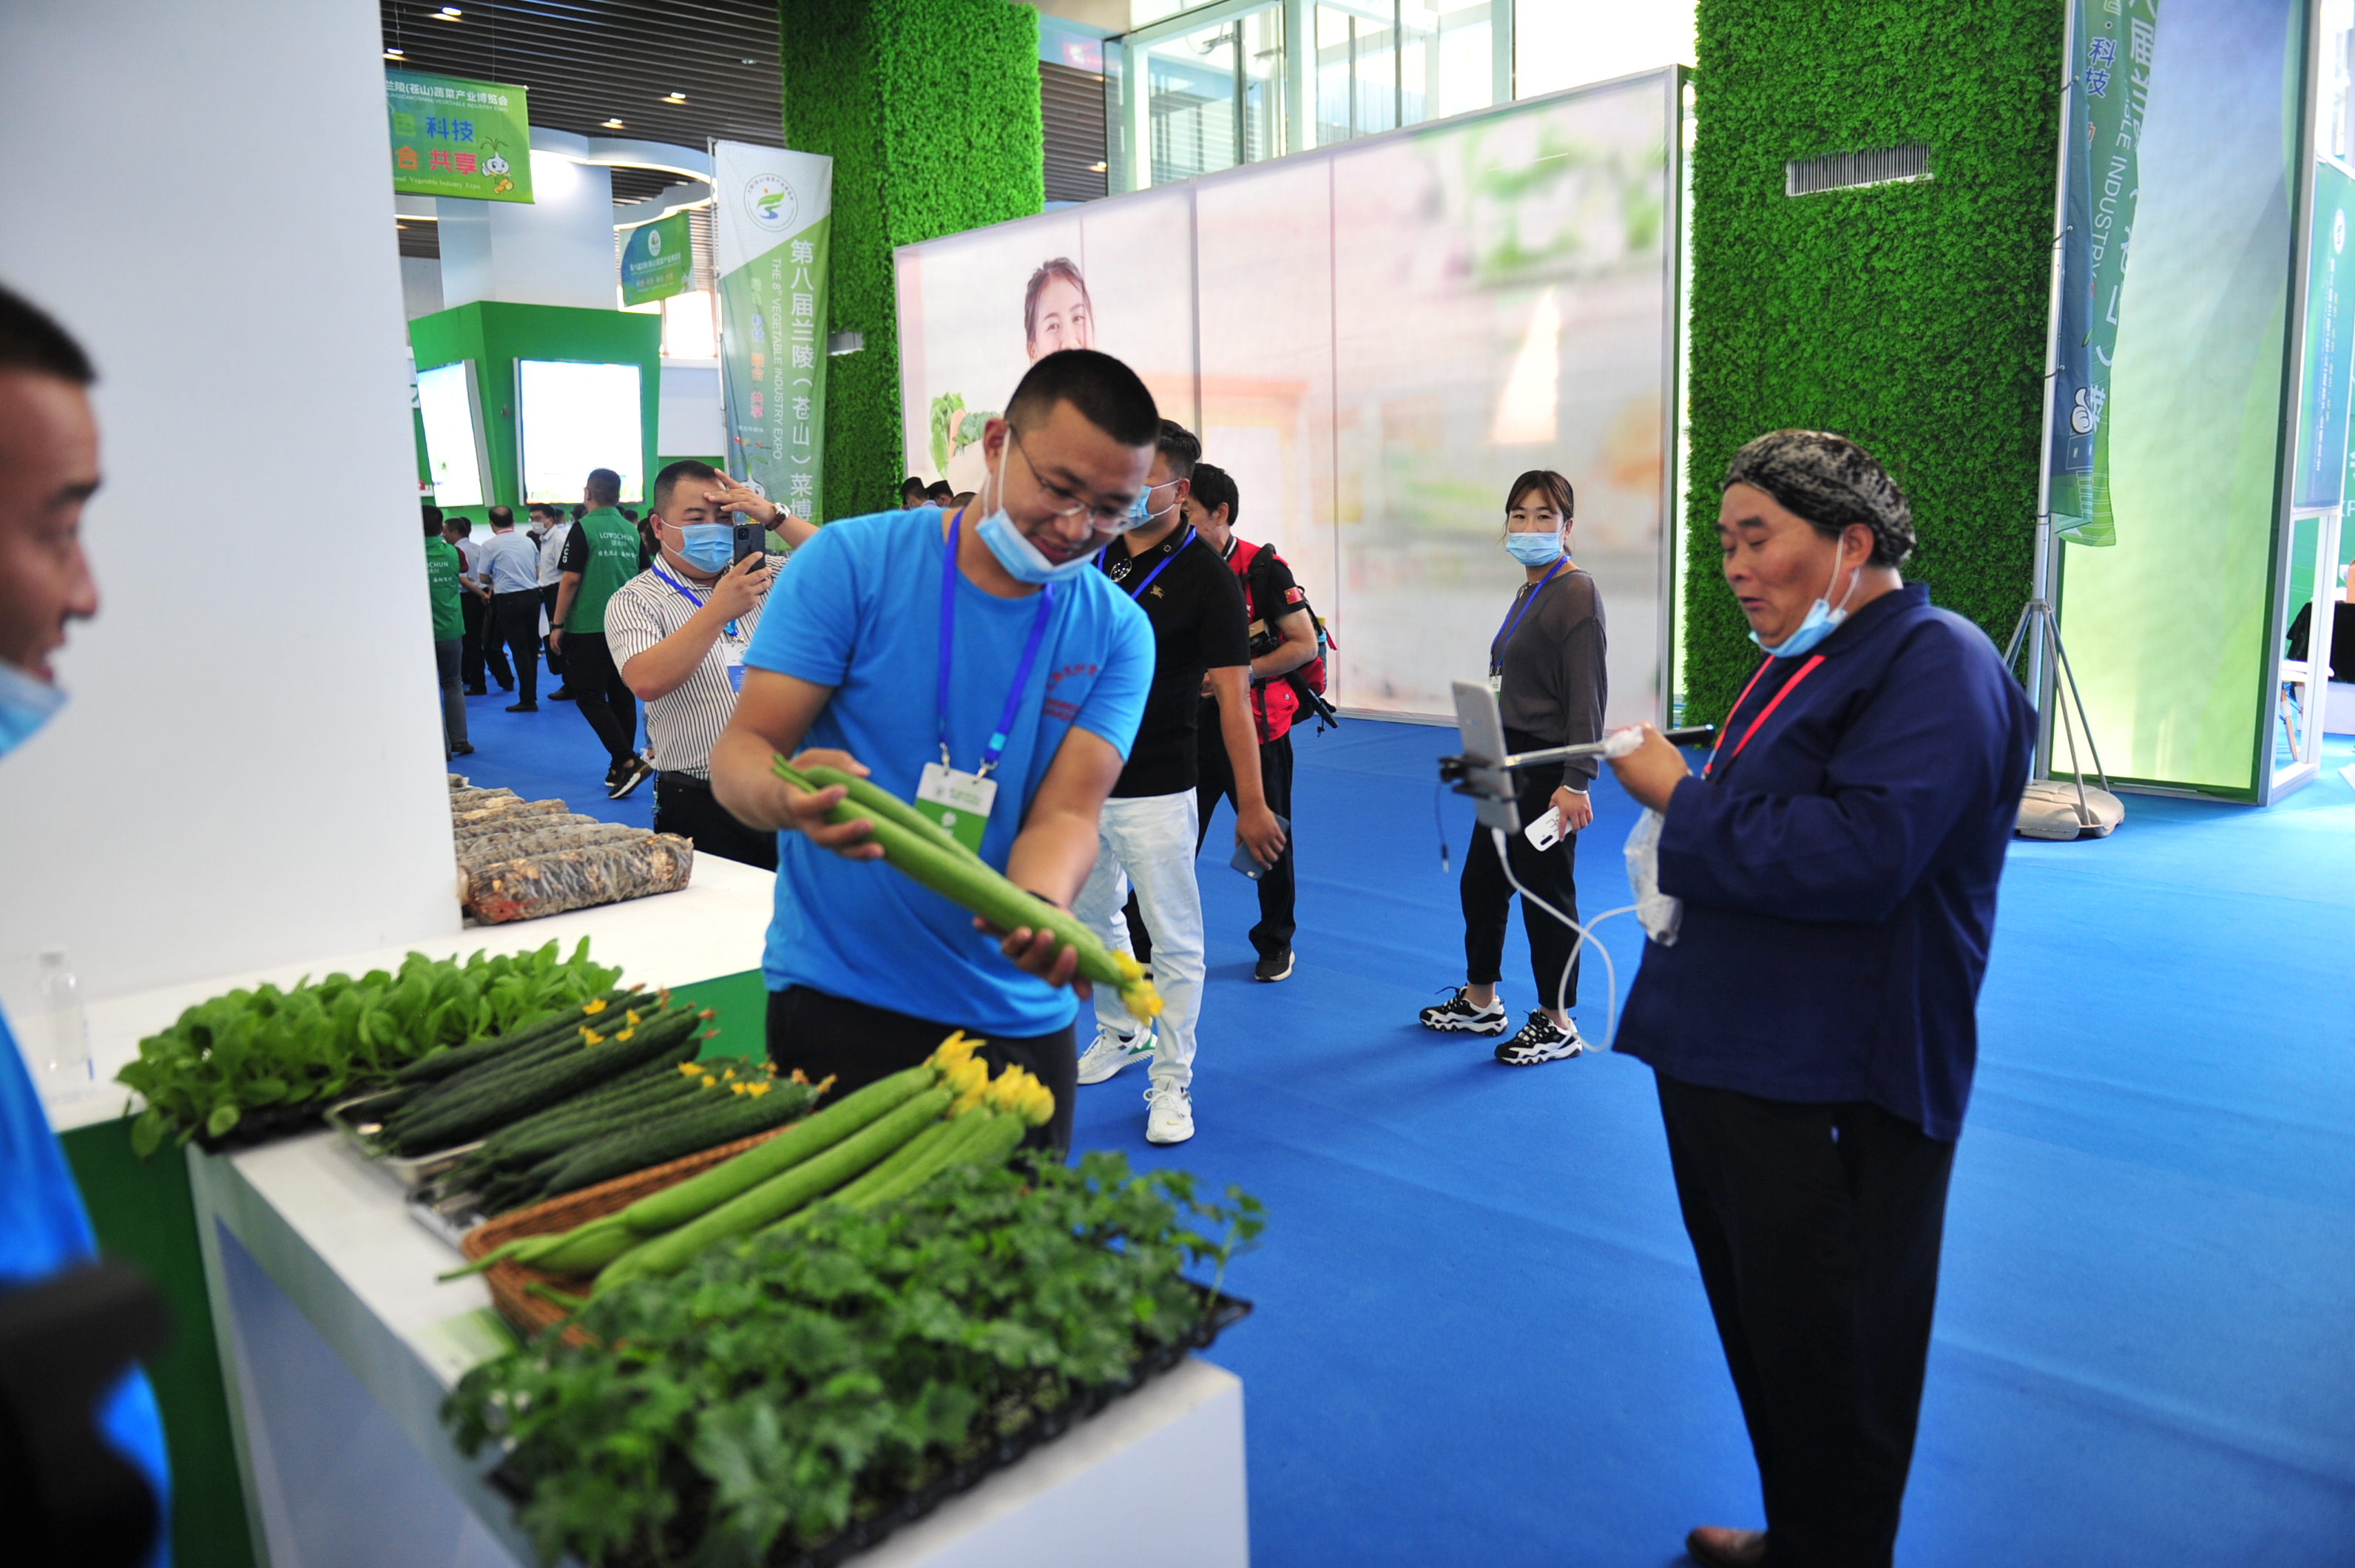 绿色+科技 打造现代农业智慧产业园 第八届兰陵(苍山)蔬菜产业博览会盛大开幕